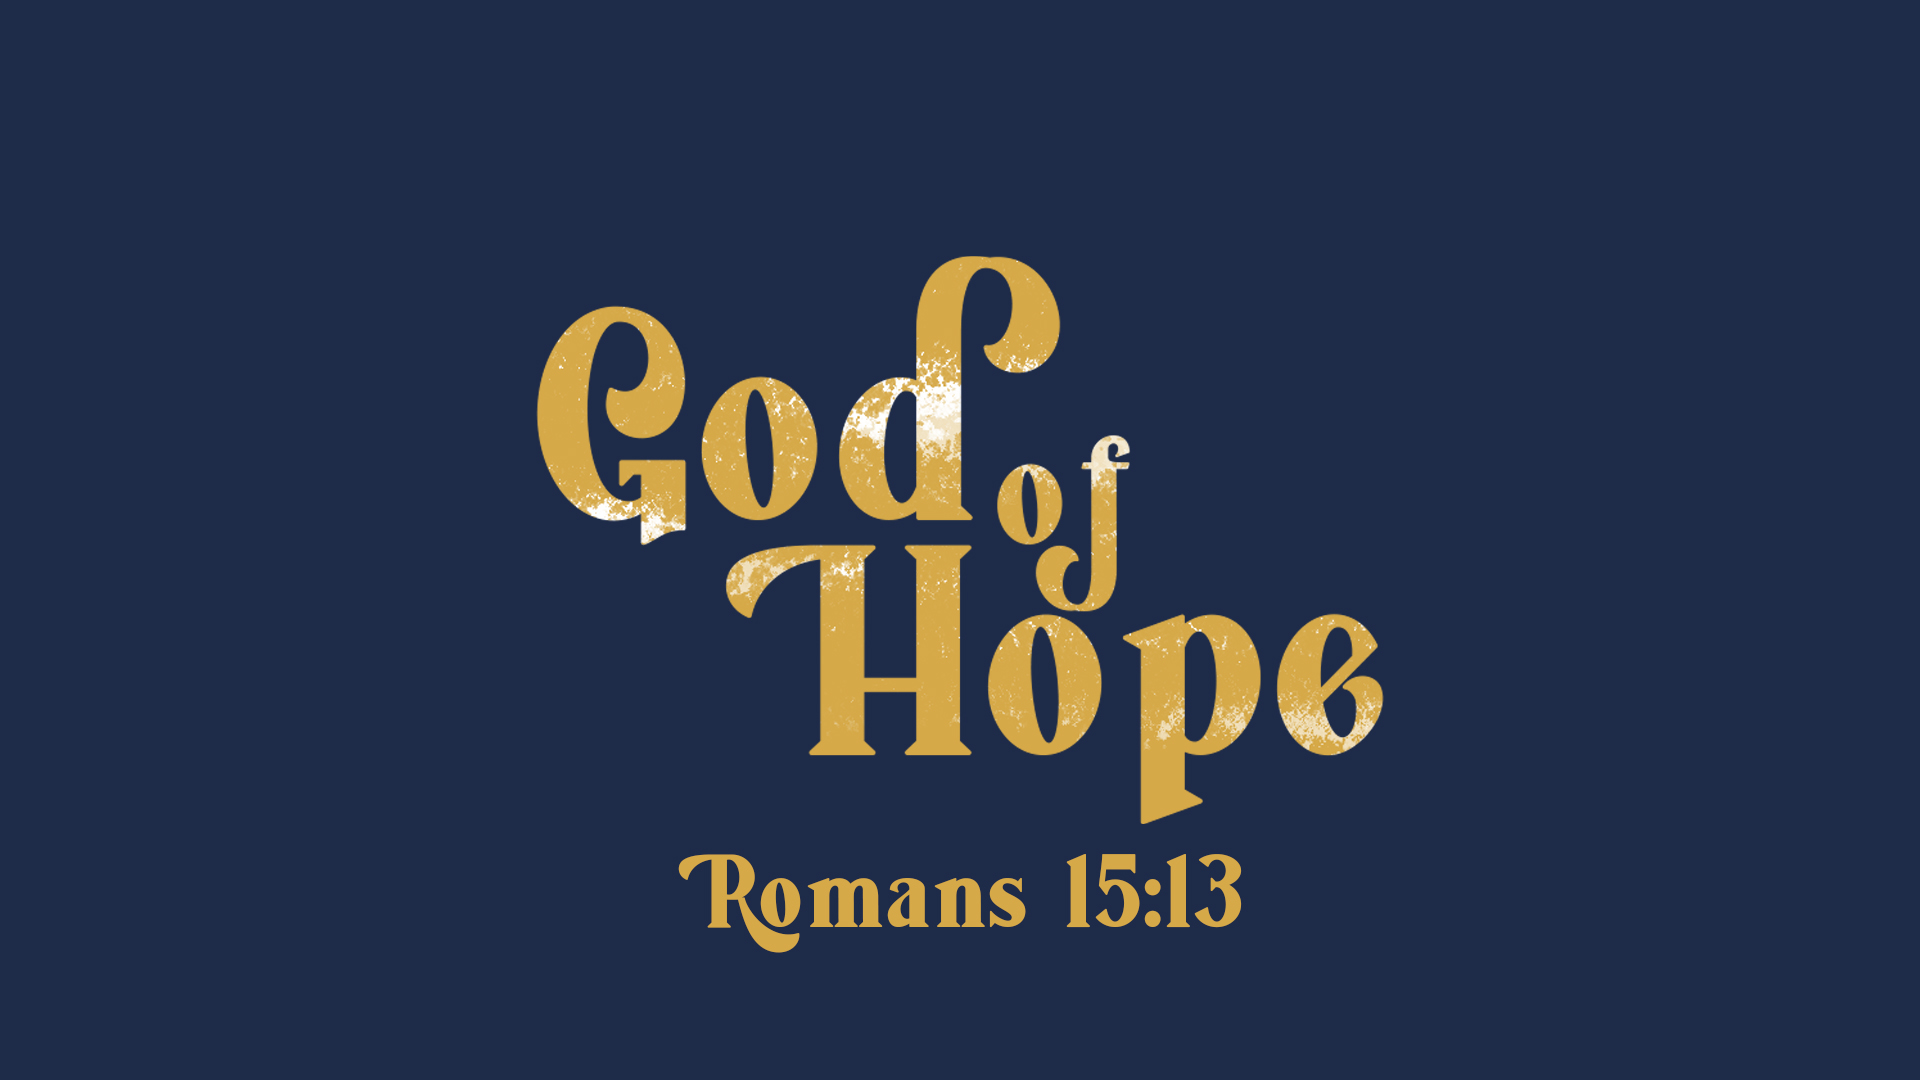 God of Hope